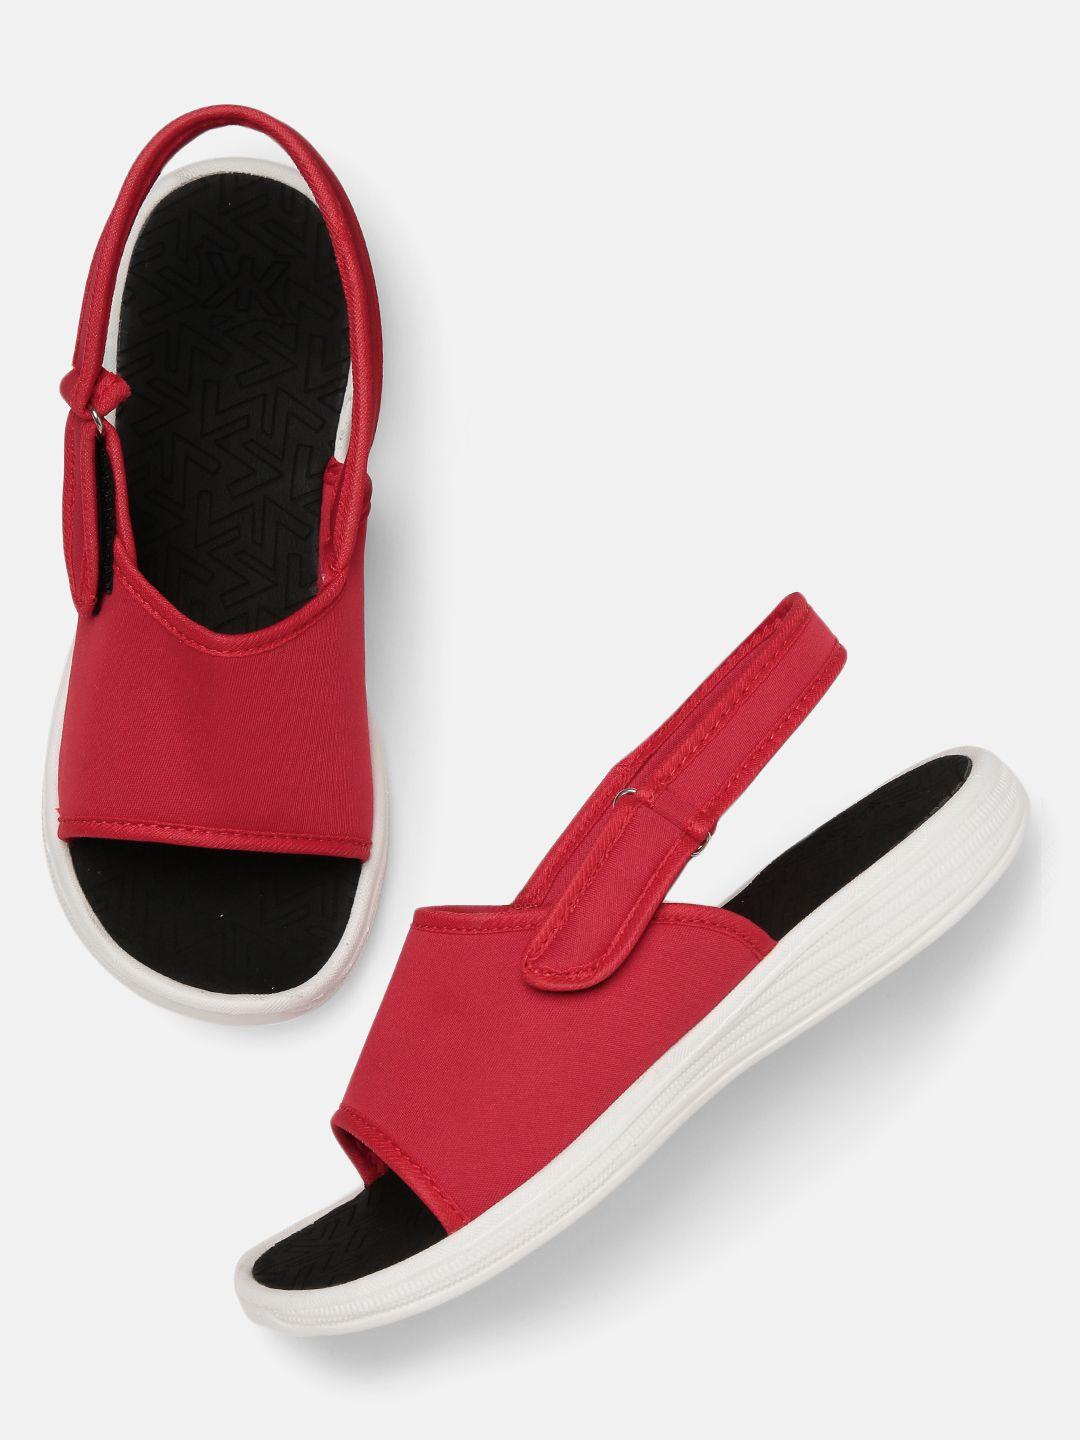 kook n keech women red & black solid sports sandals